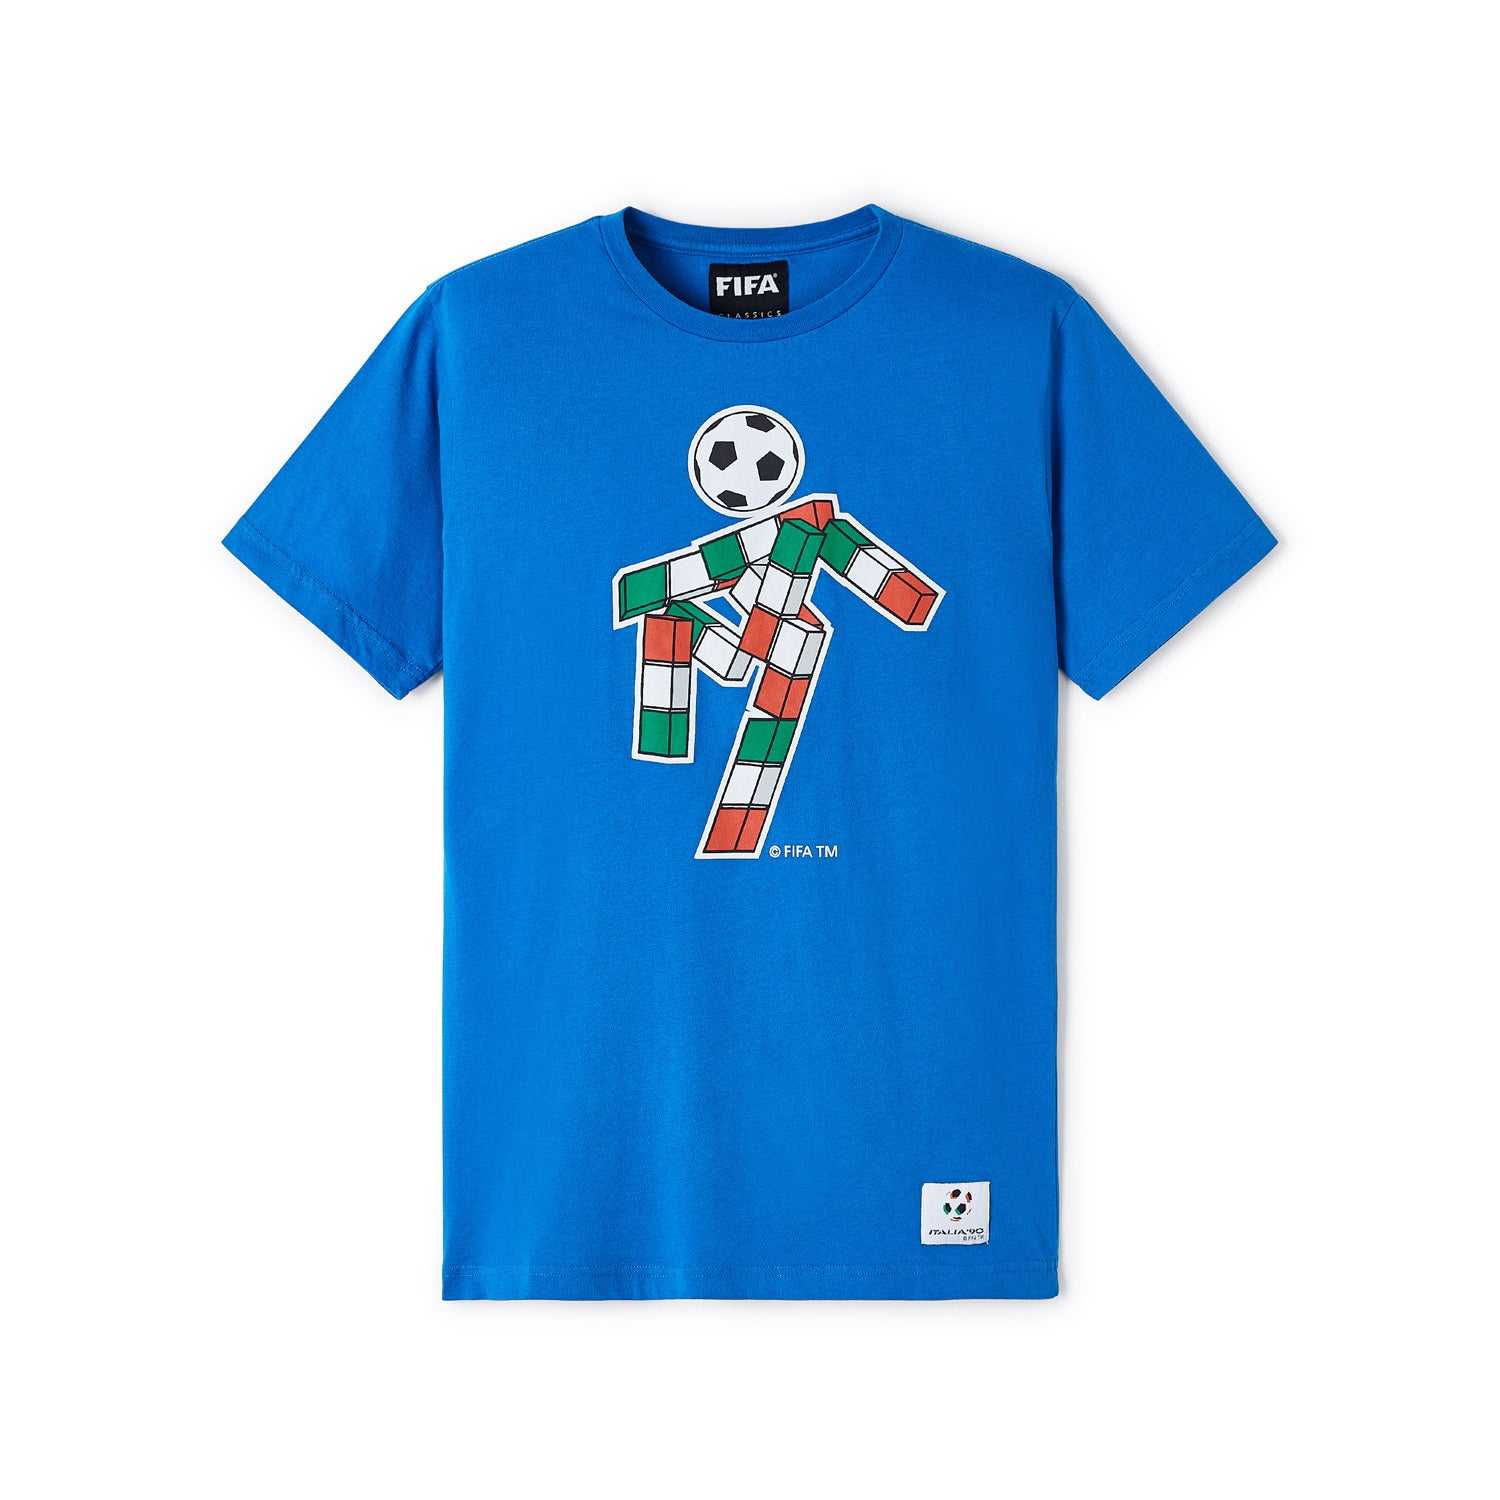 FIFA Rewind 1990 World Cup Mascot Blue T-Shirt